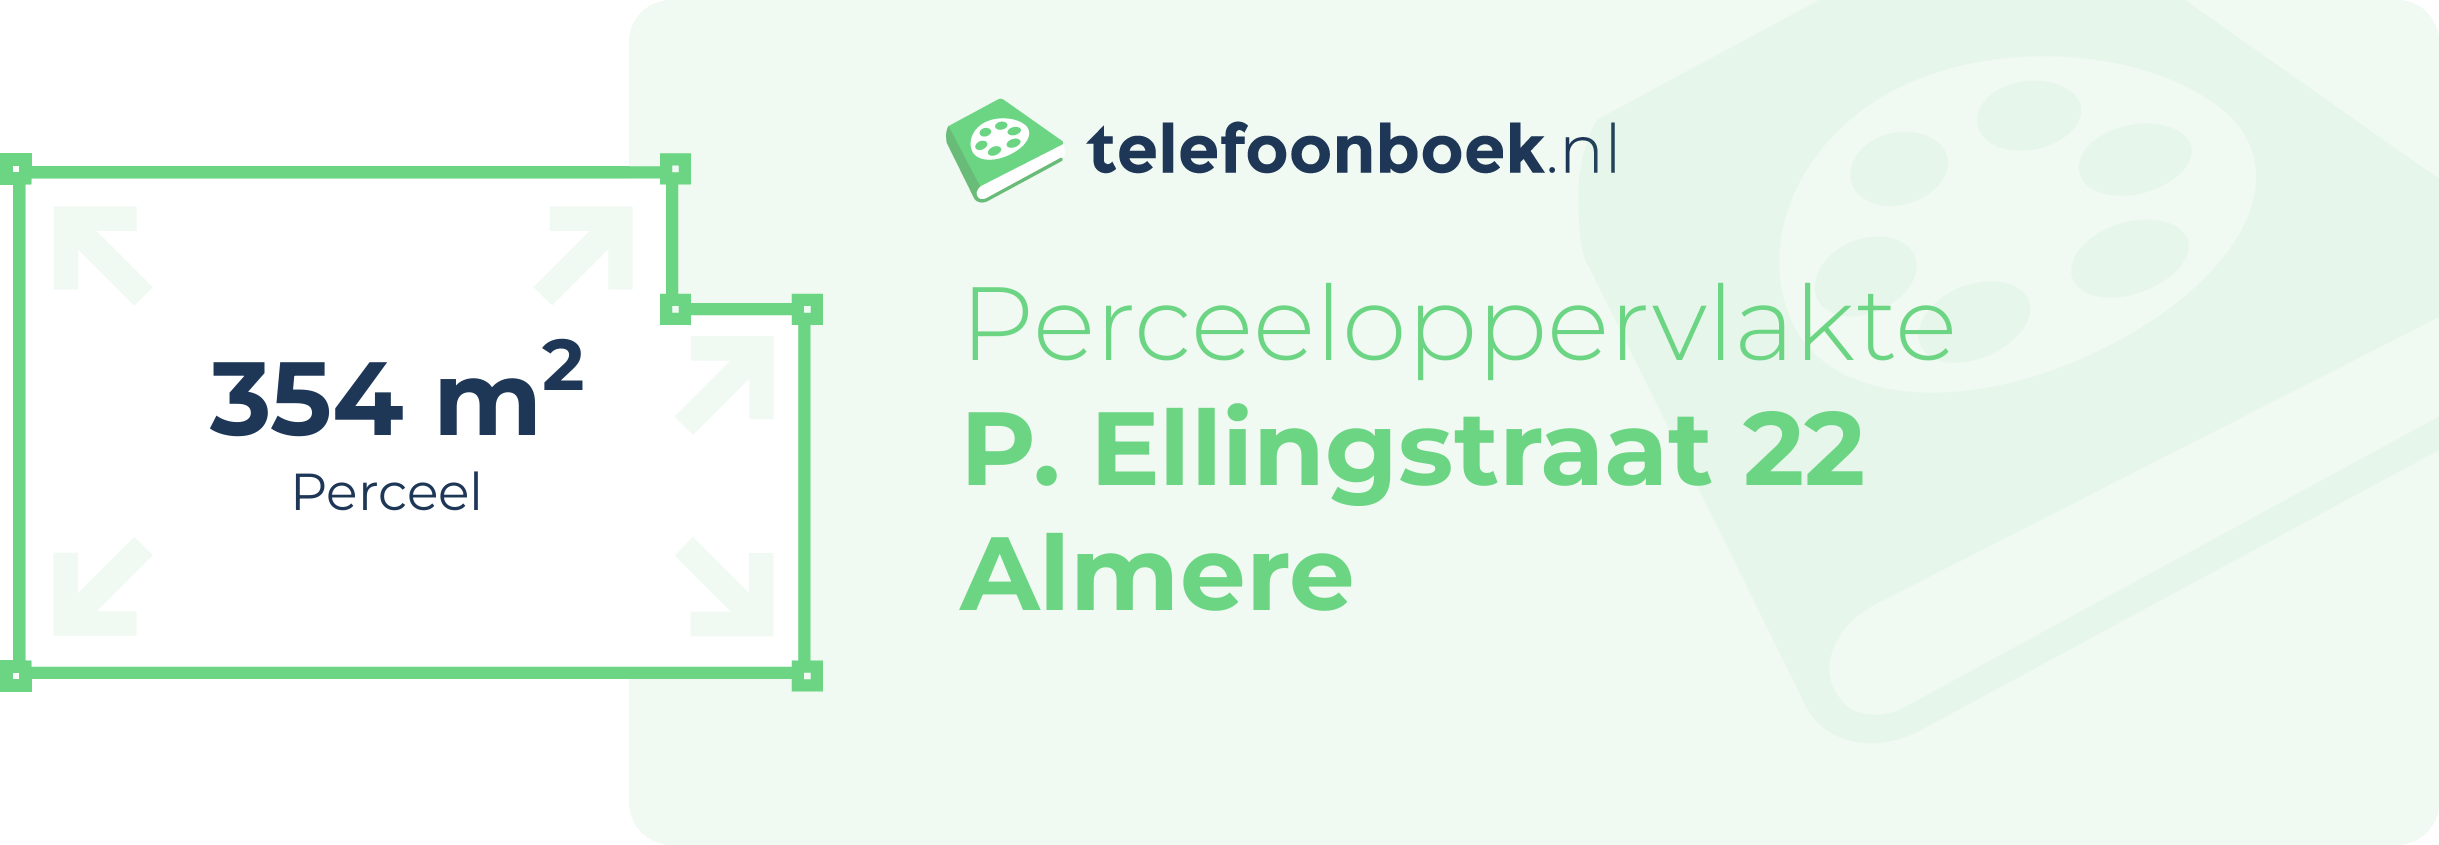 Perceeloppervlakte P. Ellingstraat 22 Almere